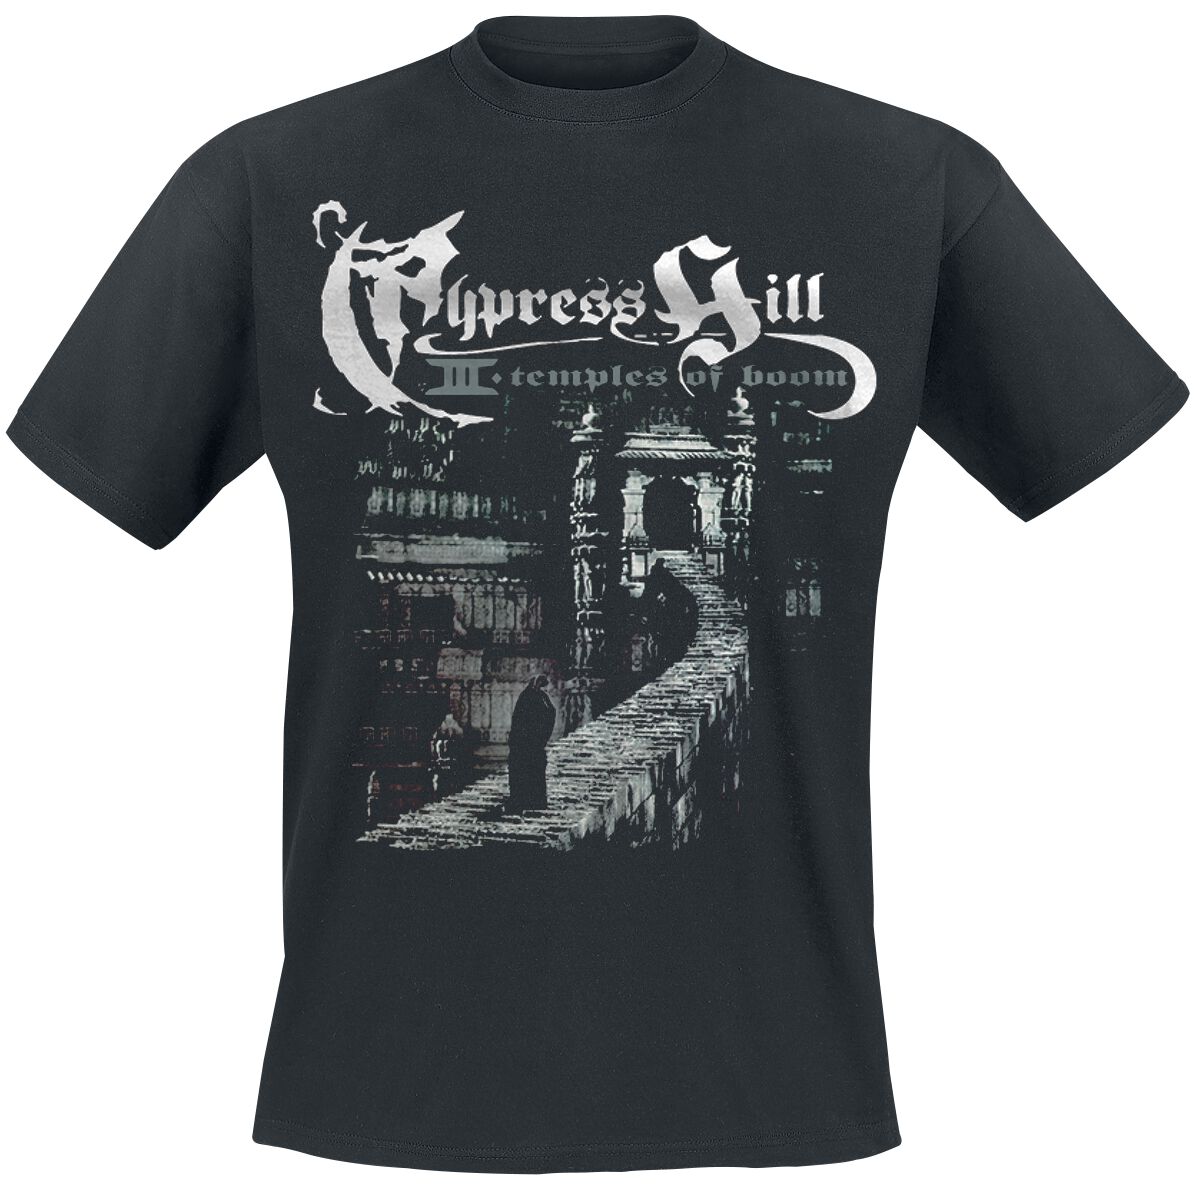 Cypress Hill T-Shirt - Temple Of Boom - S bis 5XL - für Männer - Größe L - schwarz  - Lizenziertes Merchandise!